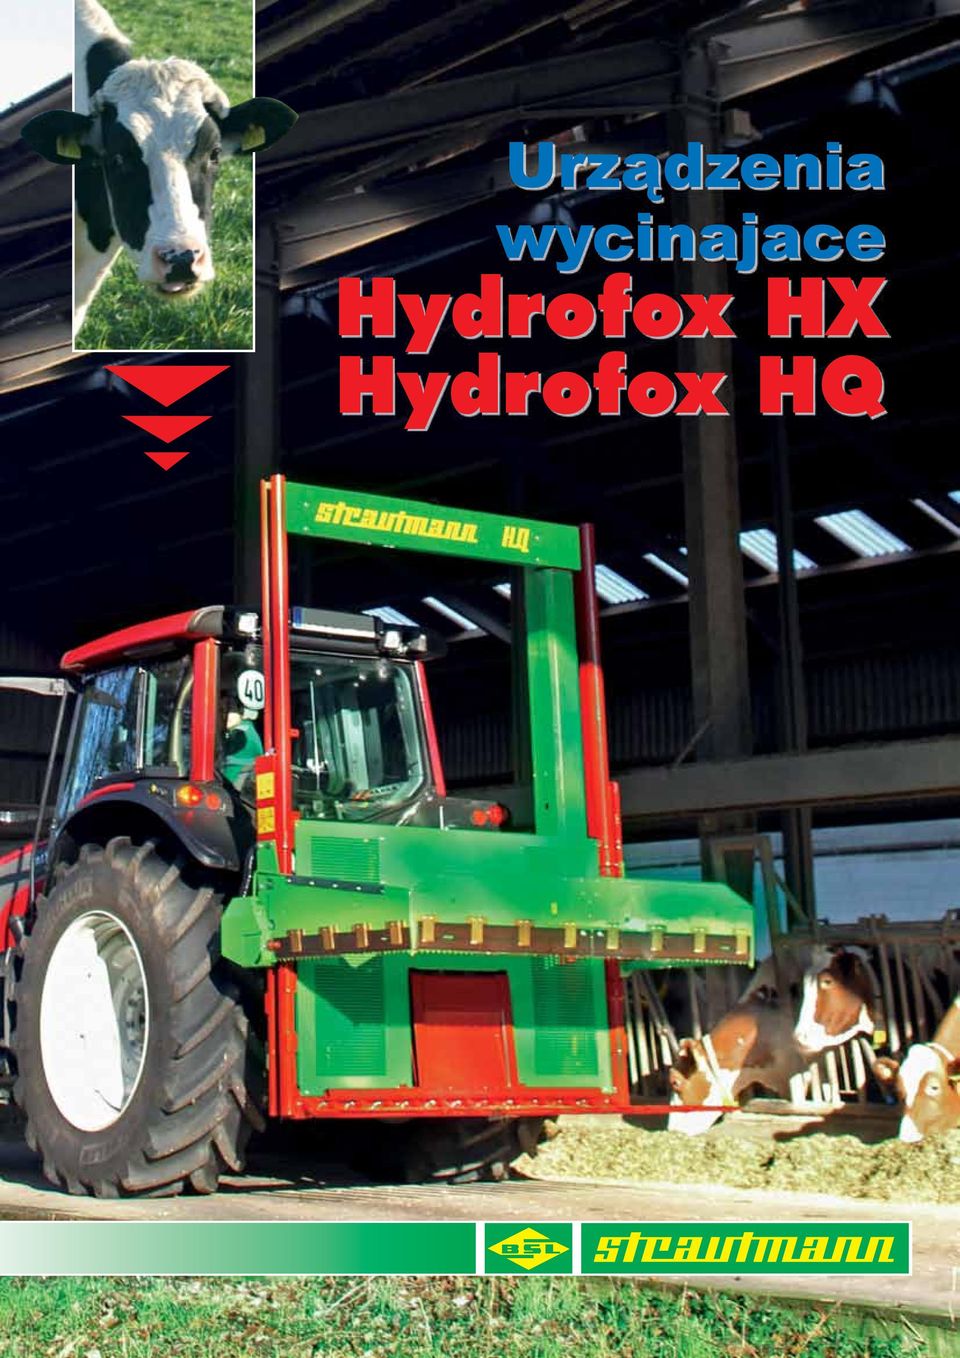 Hydrofox HX